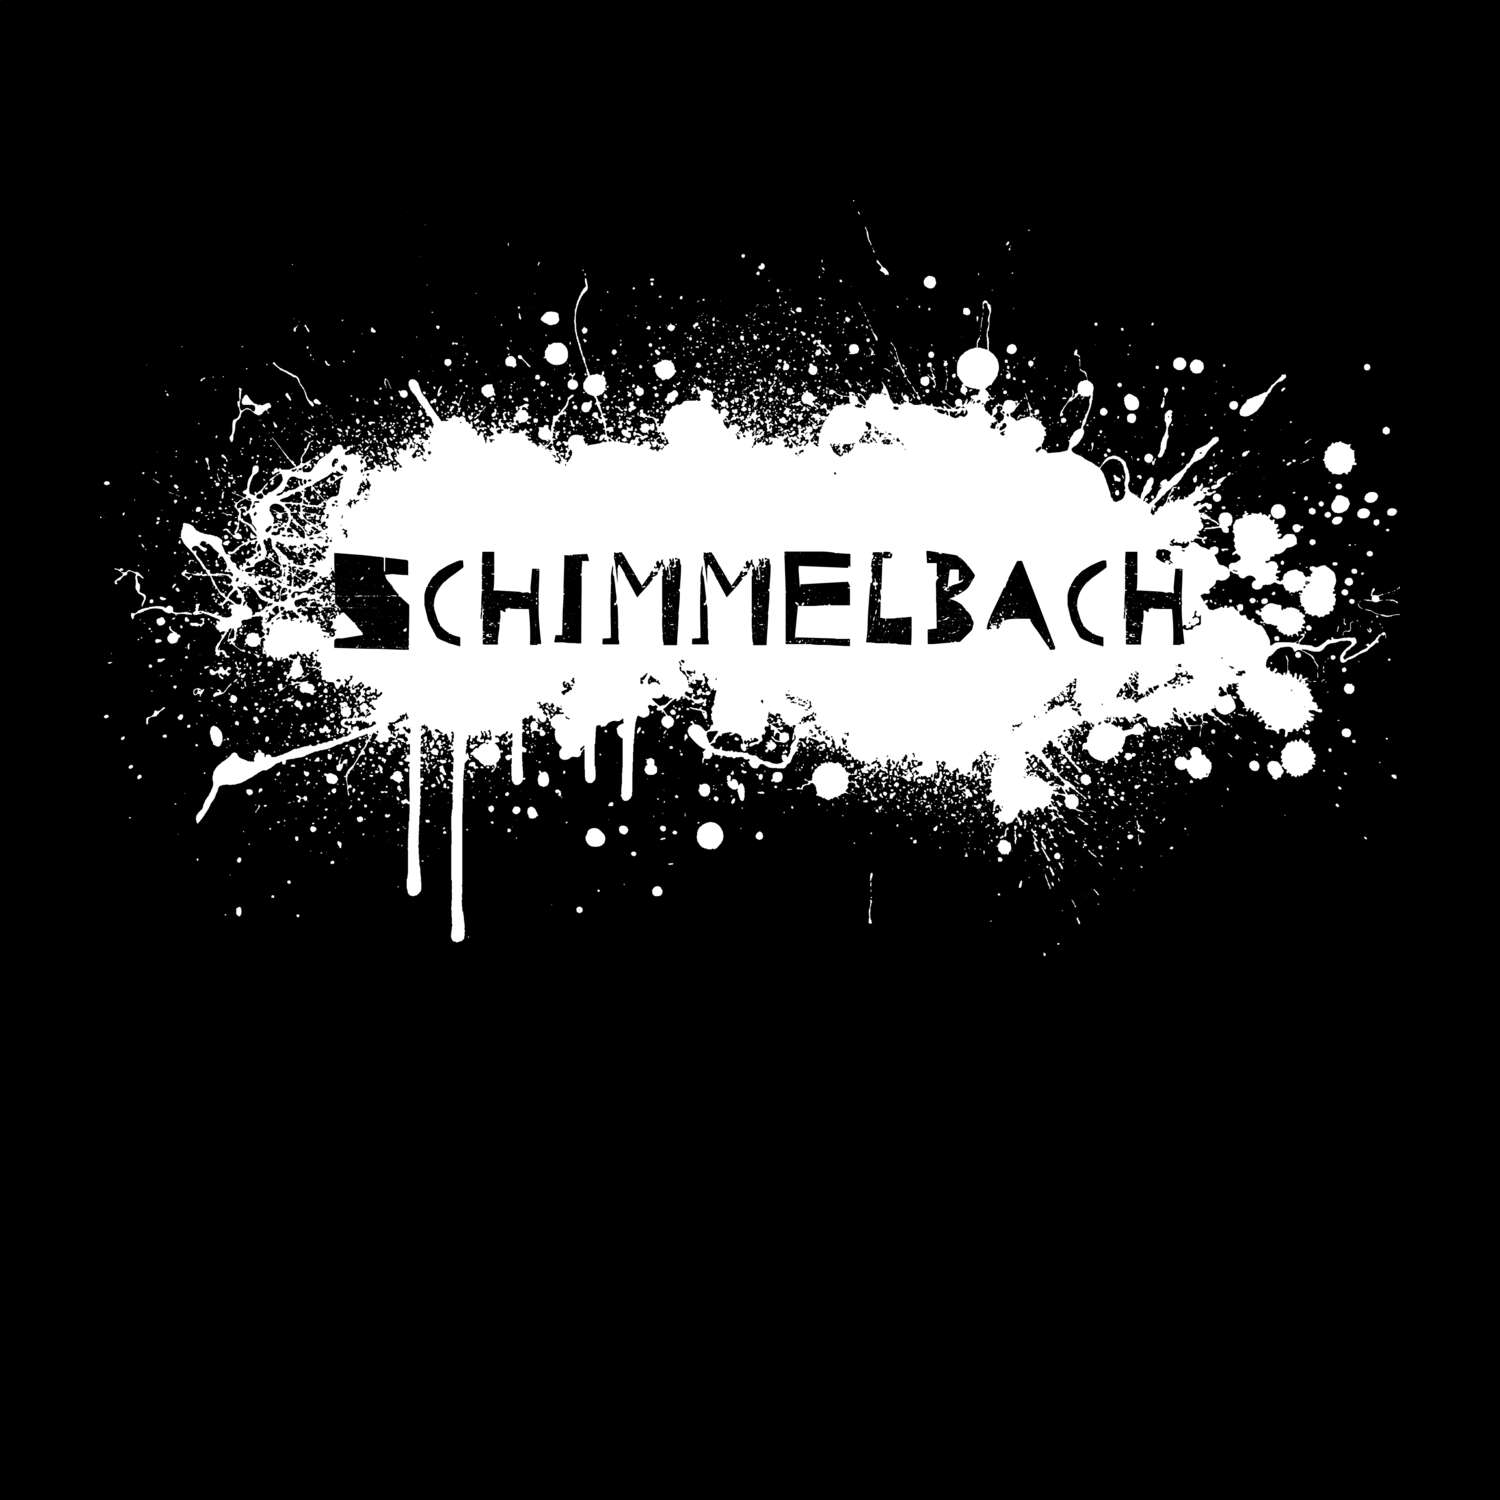 Schimmelbach T-Shirt »Paint Splash Punk«